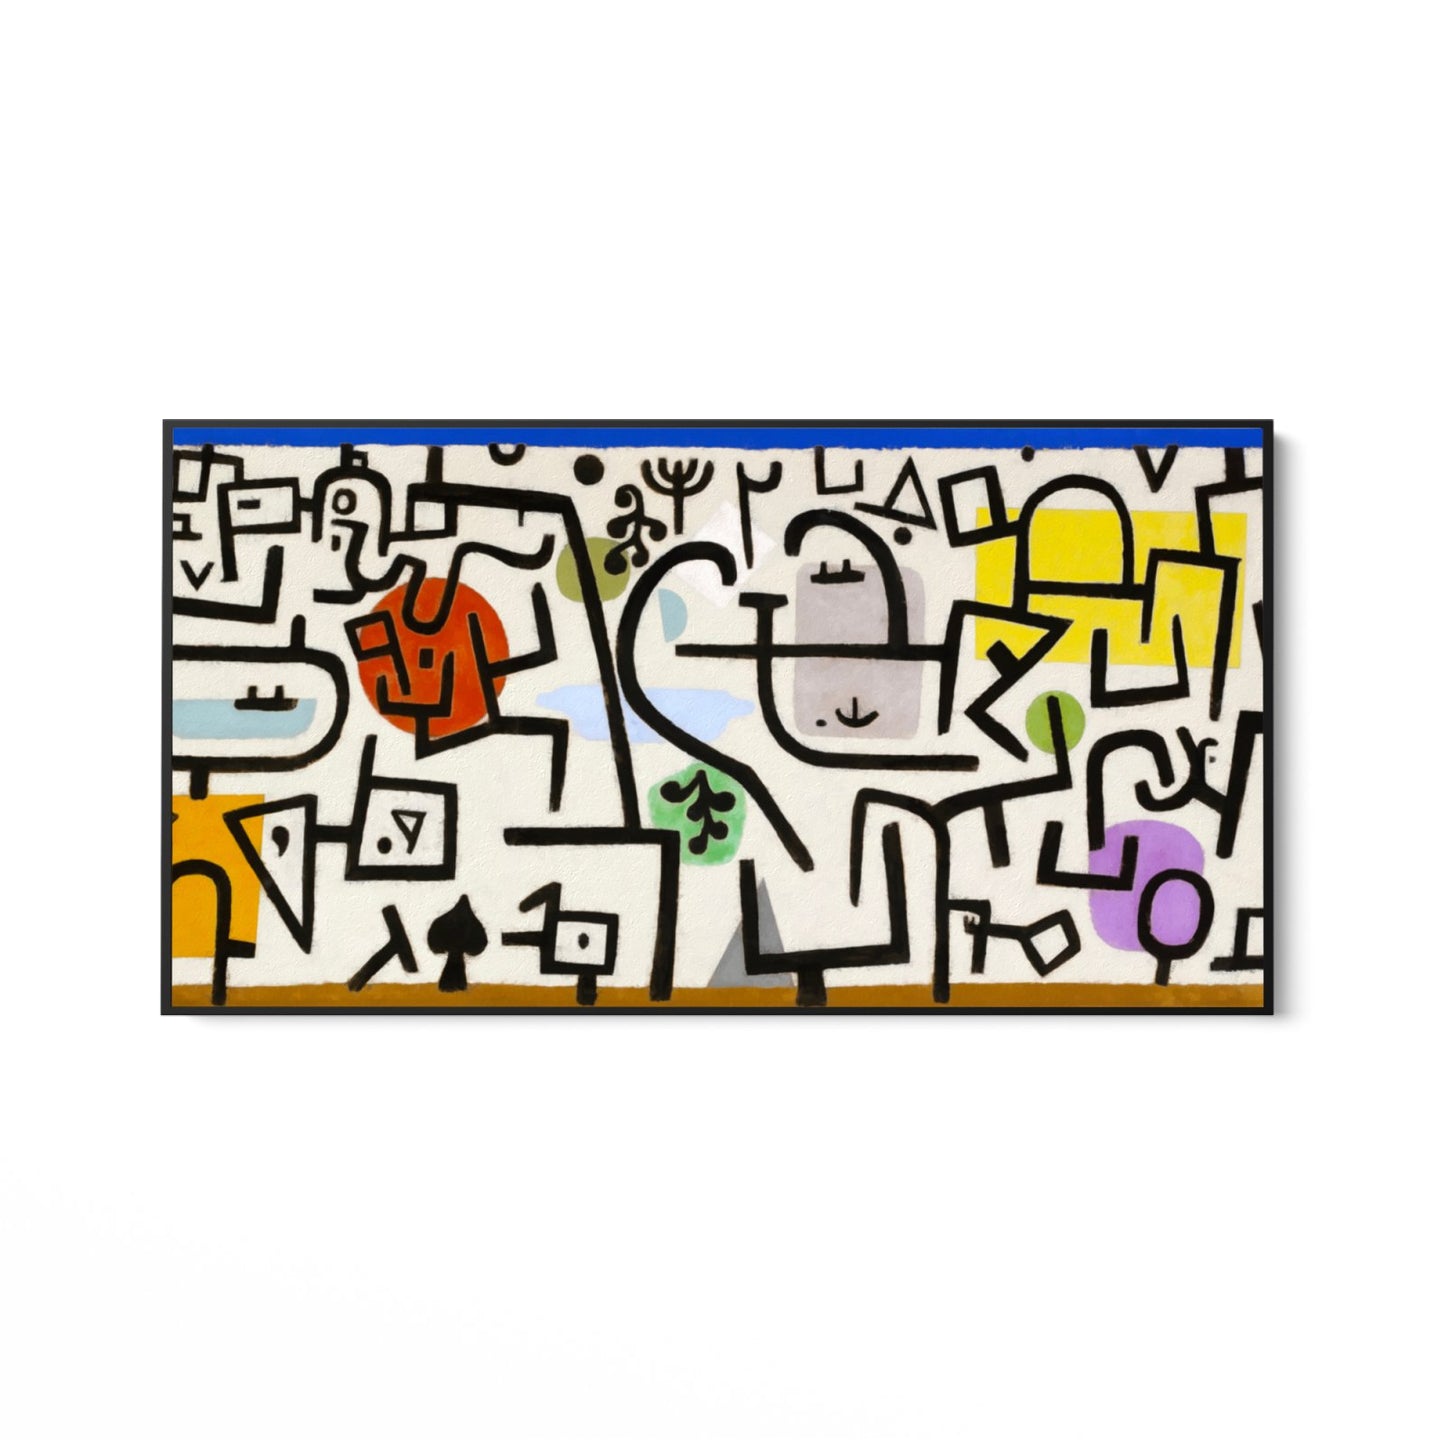 Paul Klee, Gazdag kikötő